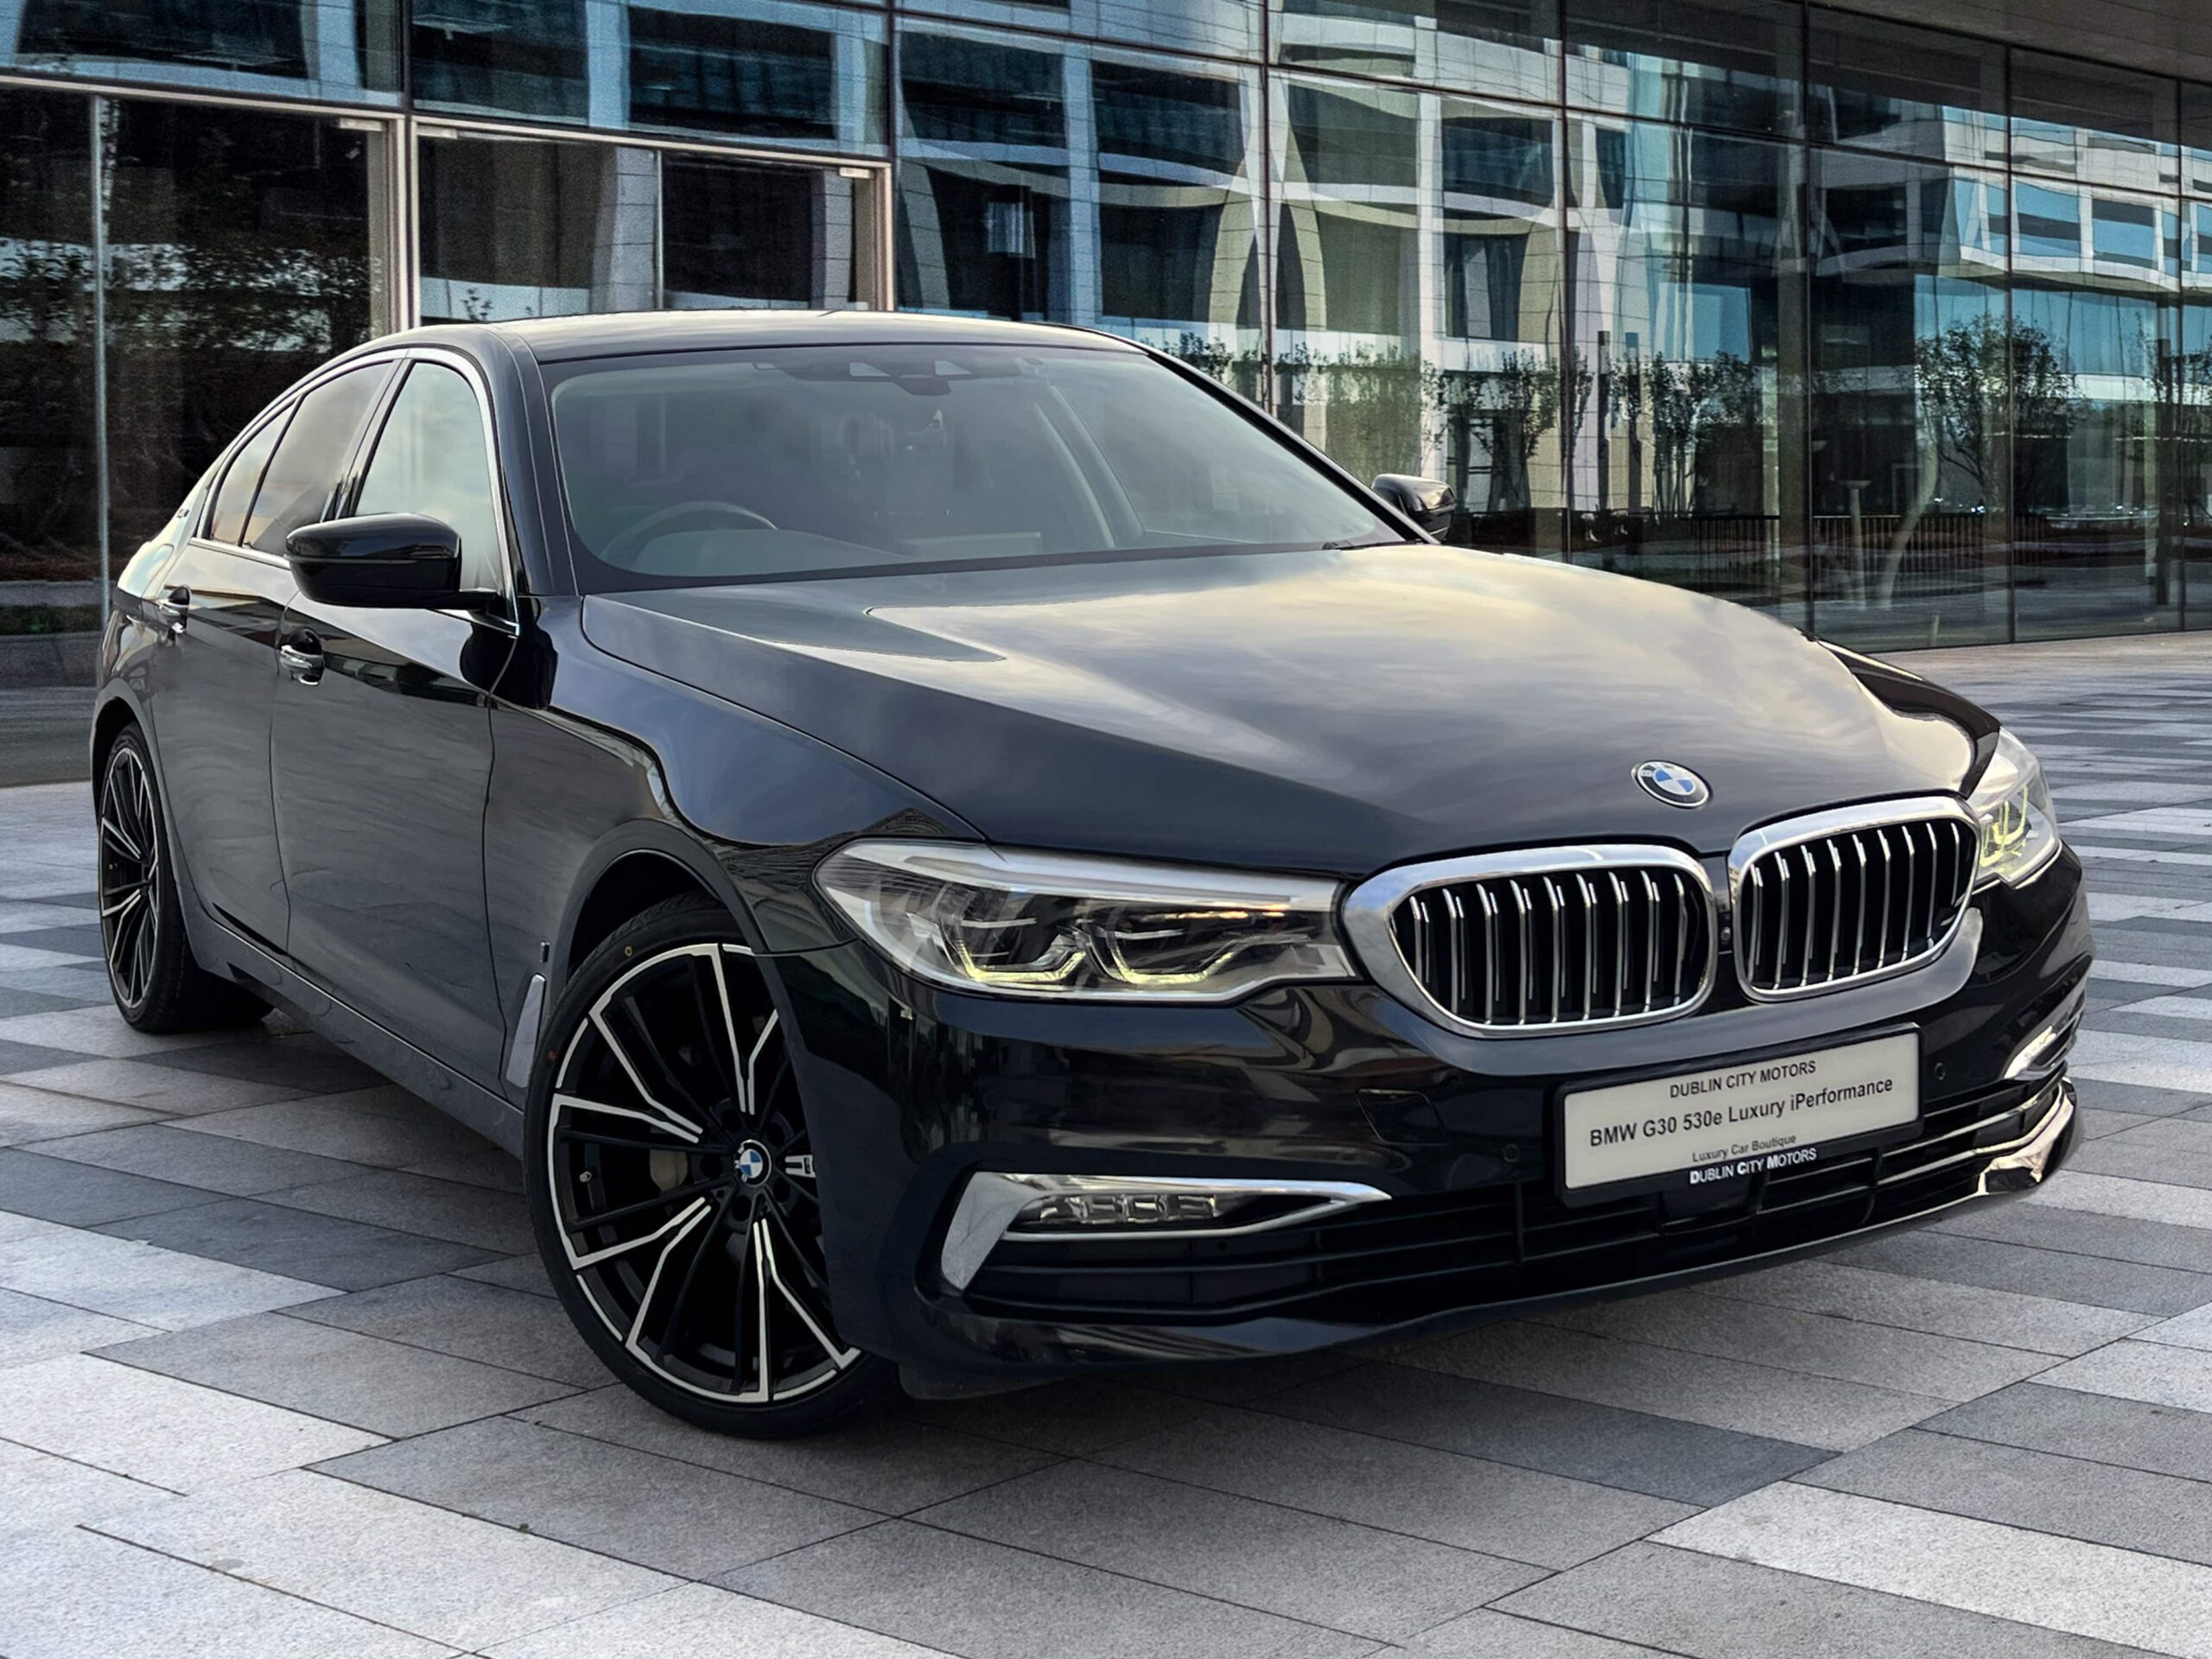 https://dublincitymotors.ie/wp-content/uploads/2023/12/BMW-530e-DUBLIN-CITY-MOTORS-Luxury-Car-Boutique-1-scaled.jpg